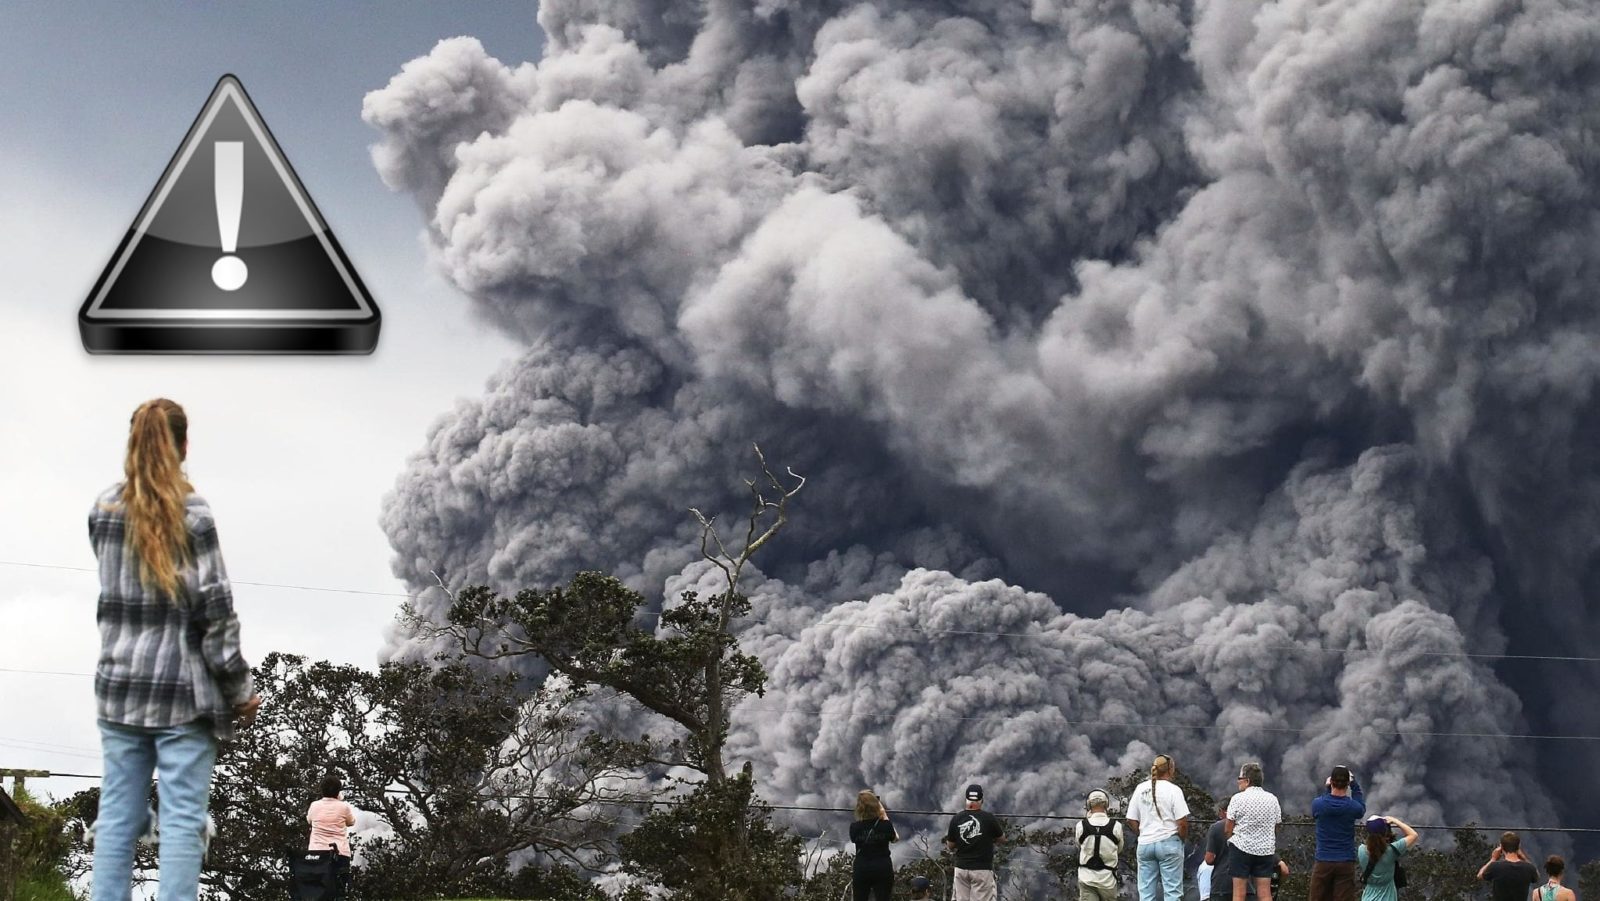 El Volcán Kilauea de Hawaii ha entrado Hoy en una Erupción Explosiva (Video)